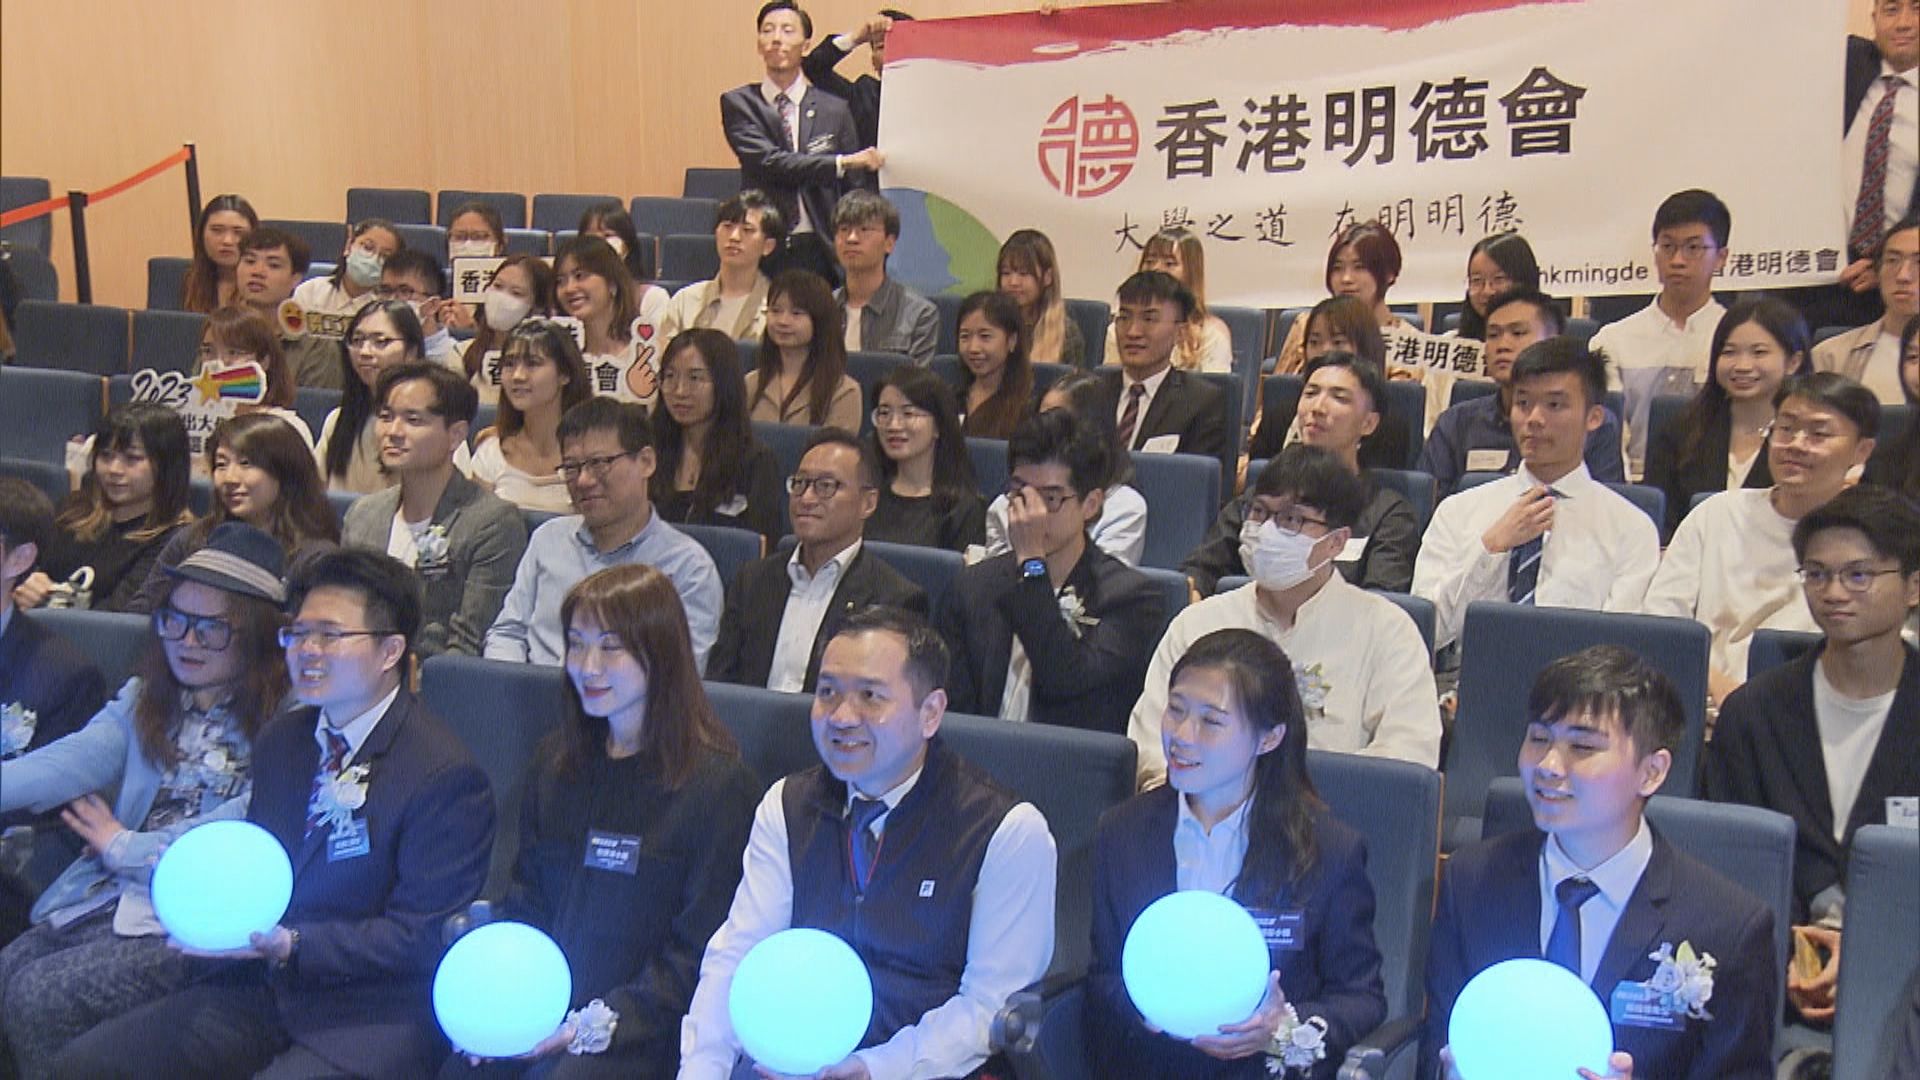 香港明德會舉辦傑出大學生選舉 近200名學生出席開幕禮